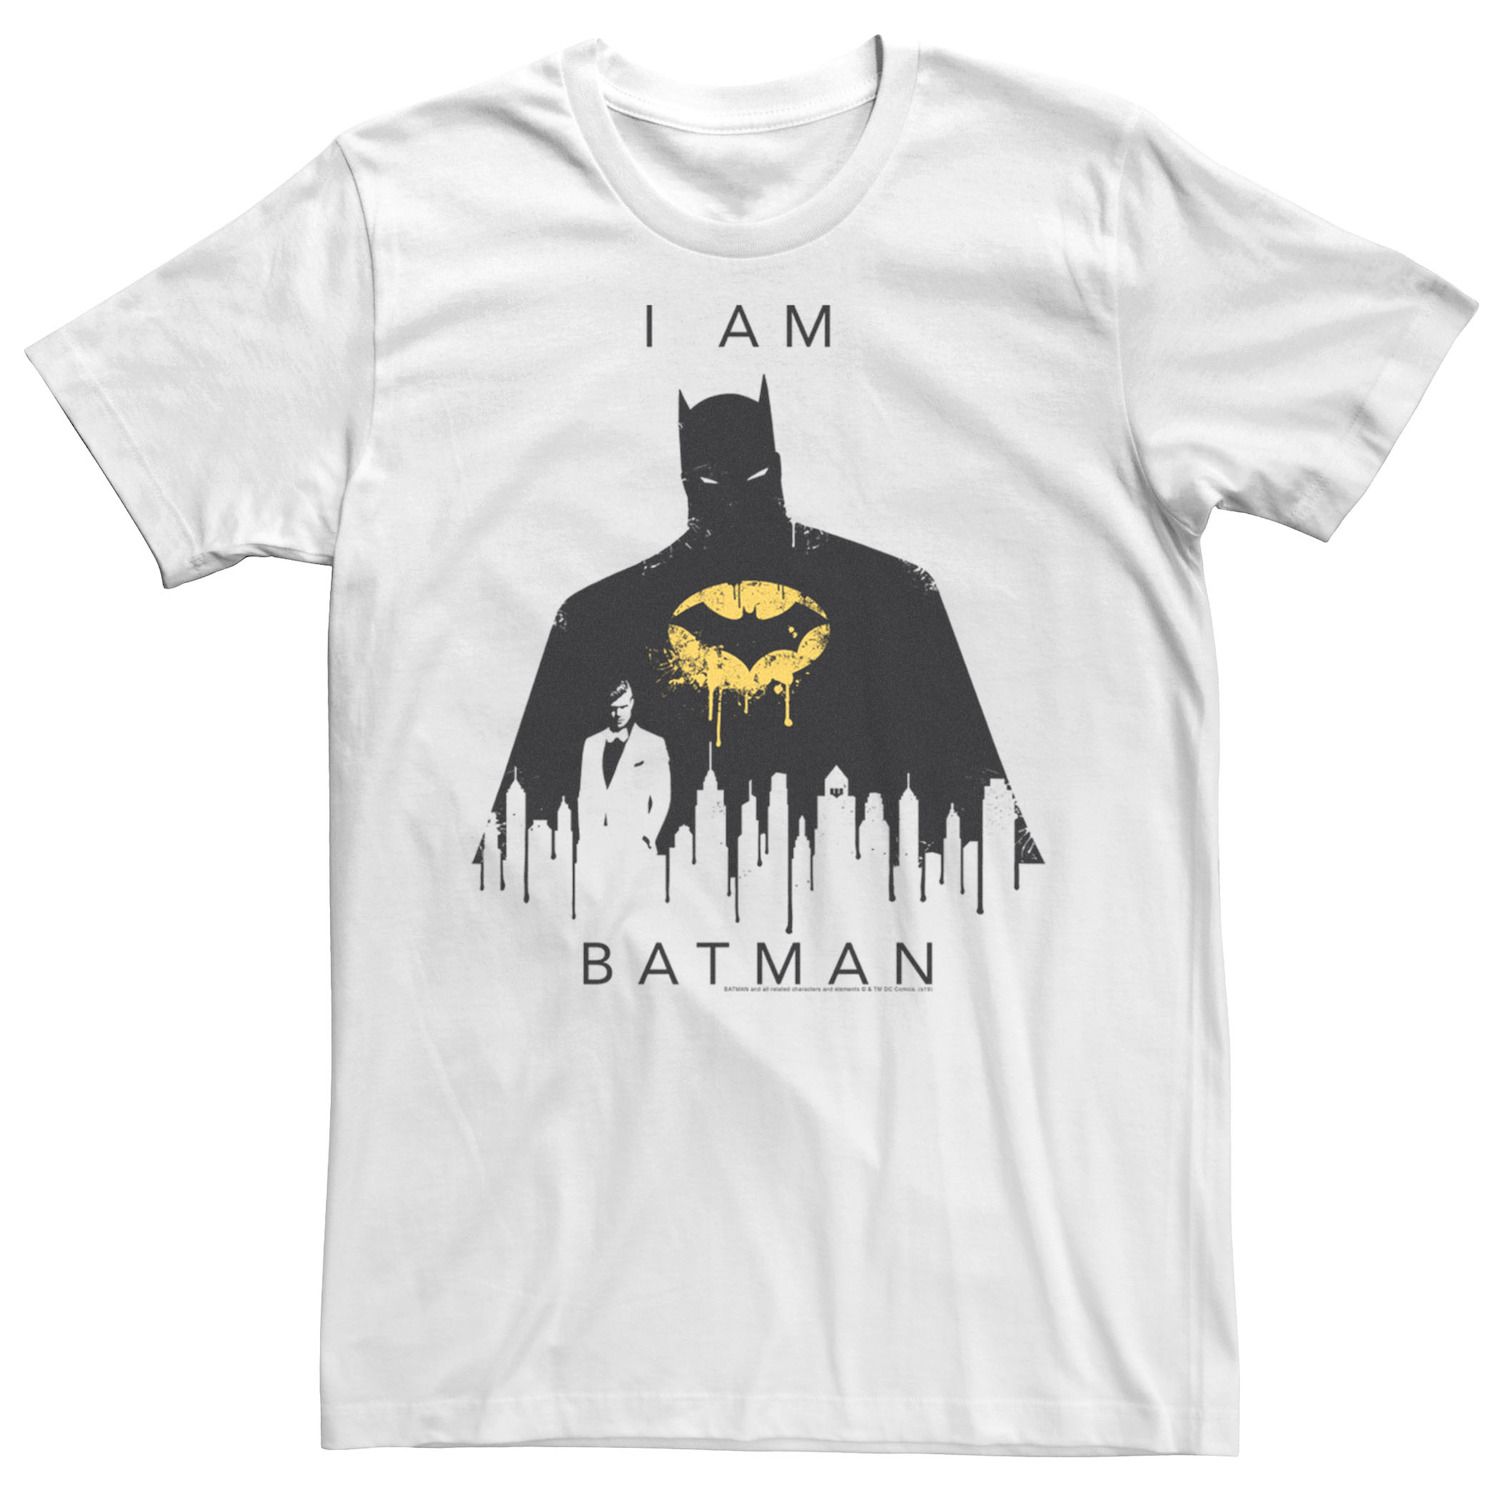 Мужская футболка Batman I Am Batman Licensed Character